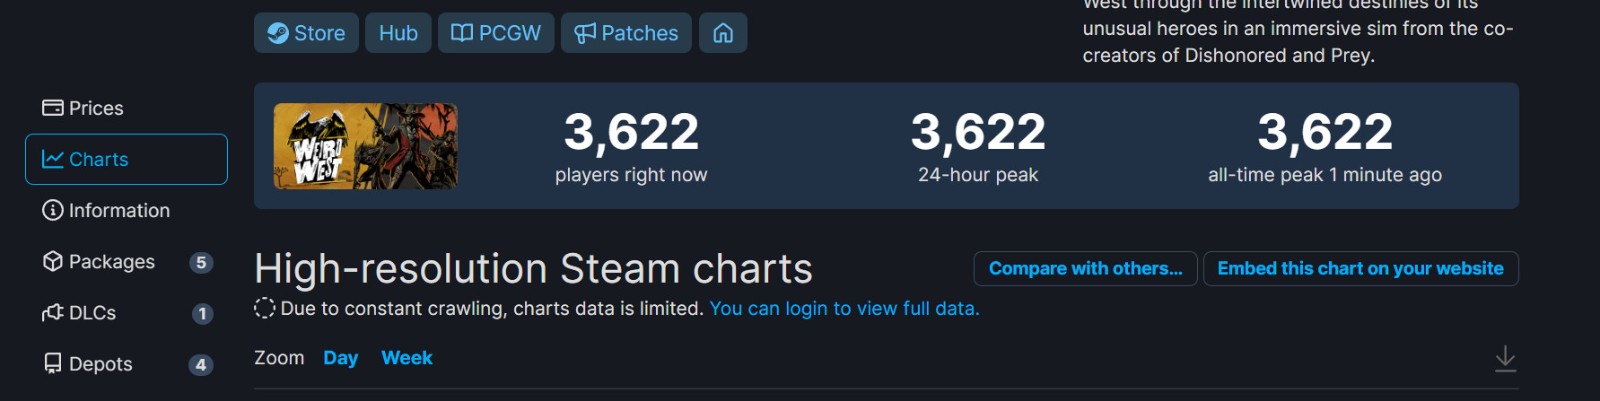 《诡异西部》Steam特别好评 在线峰值3622人